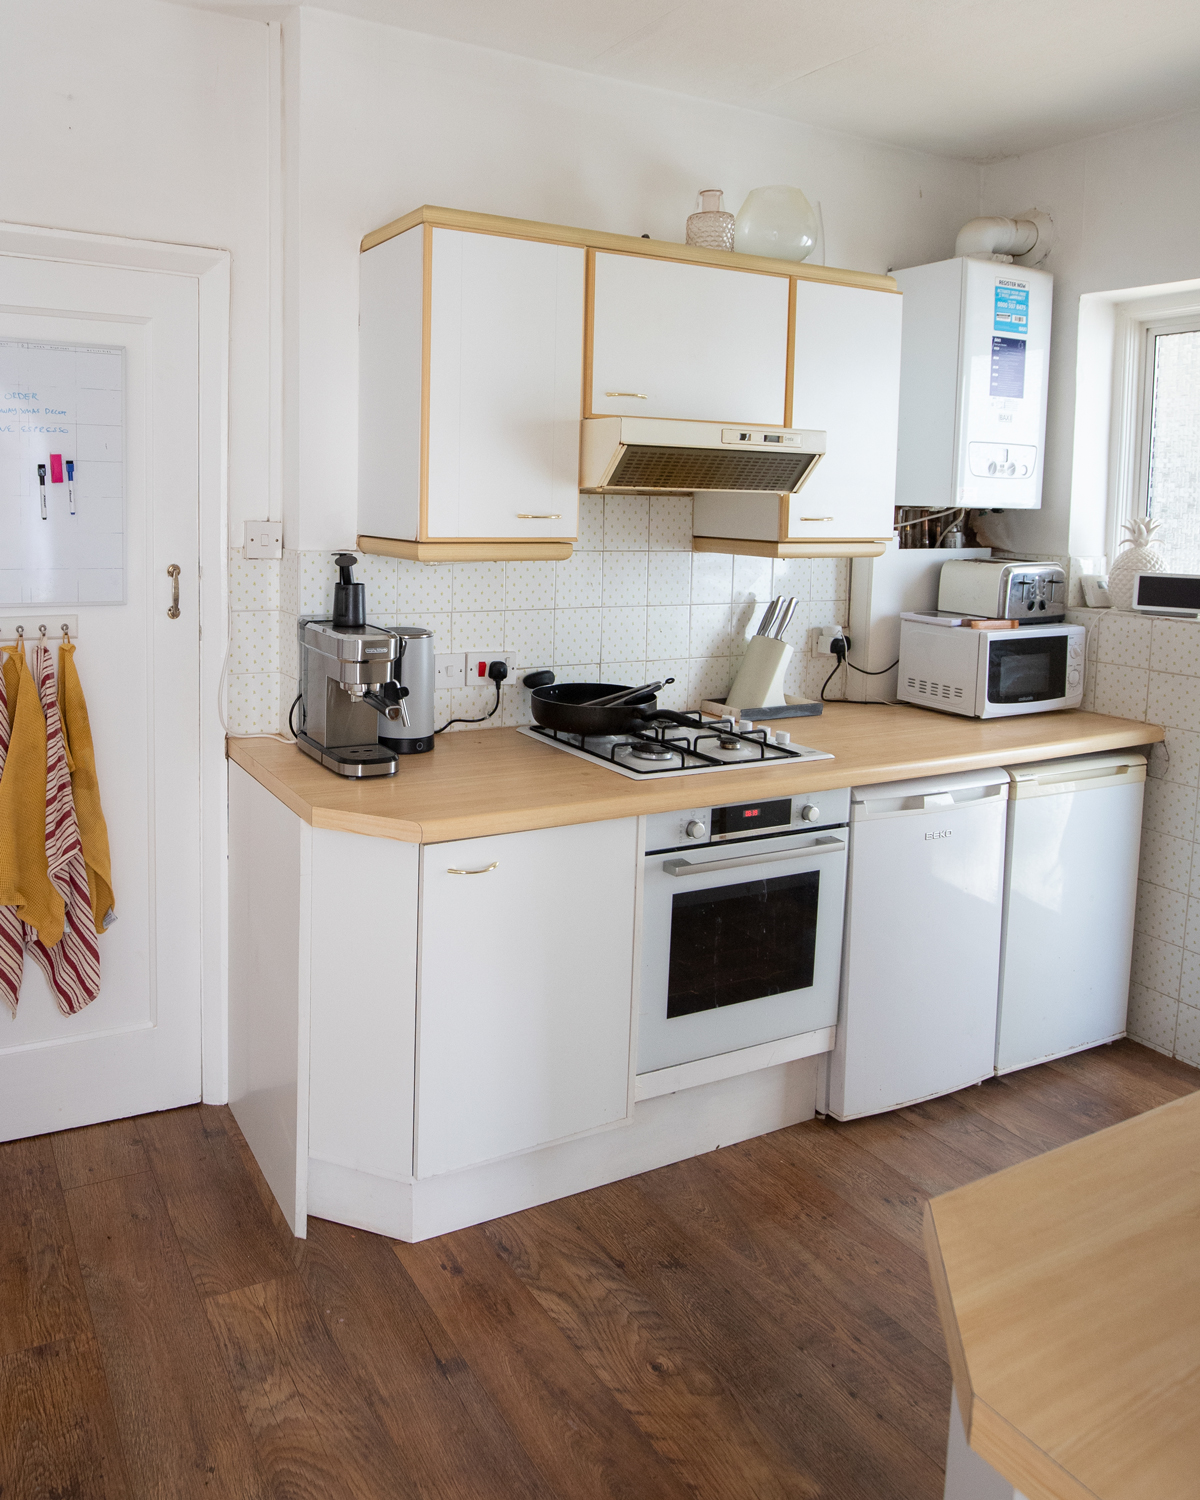 Home-with-kelsey-kelsey-heinrichs-uk-interiors-blogger-budget-kitchen-makeover-diy-renovation